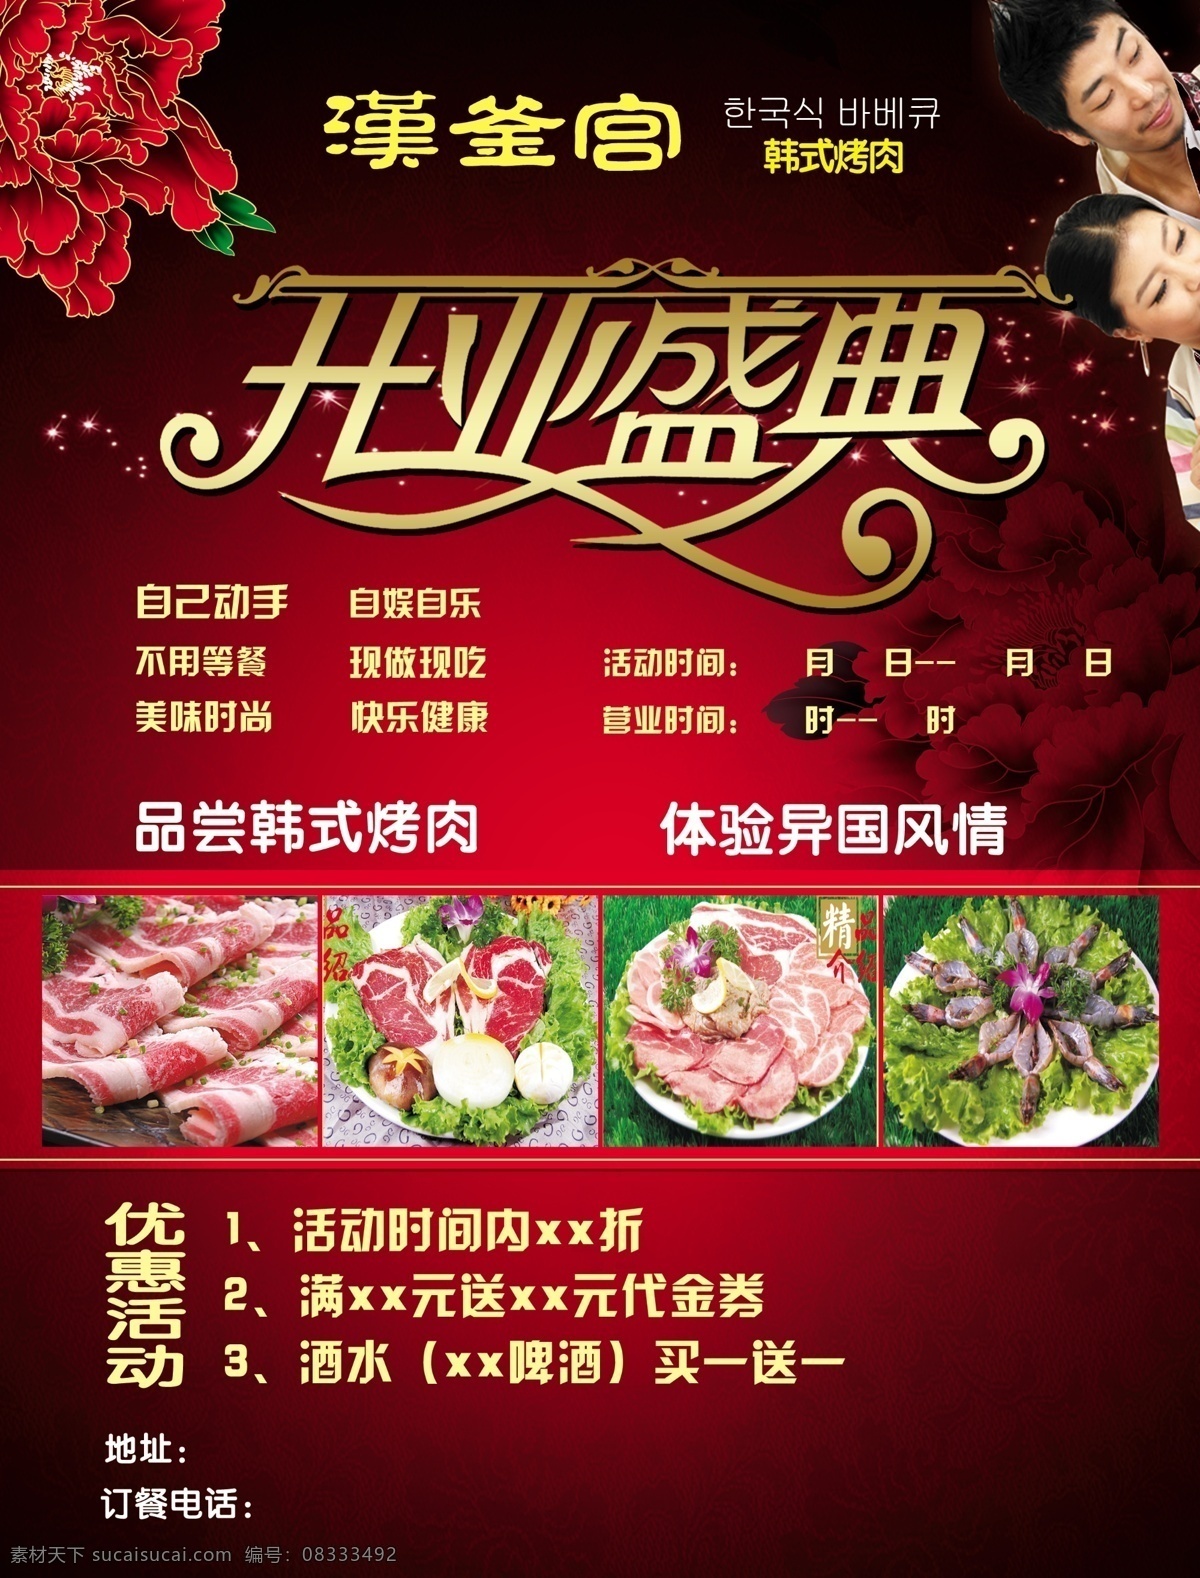 韩式 烤肉 优惠券 韩式烤肉 开业盛典 宣传彩页 红色背景 菜单菜谱